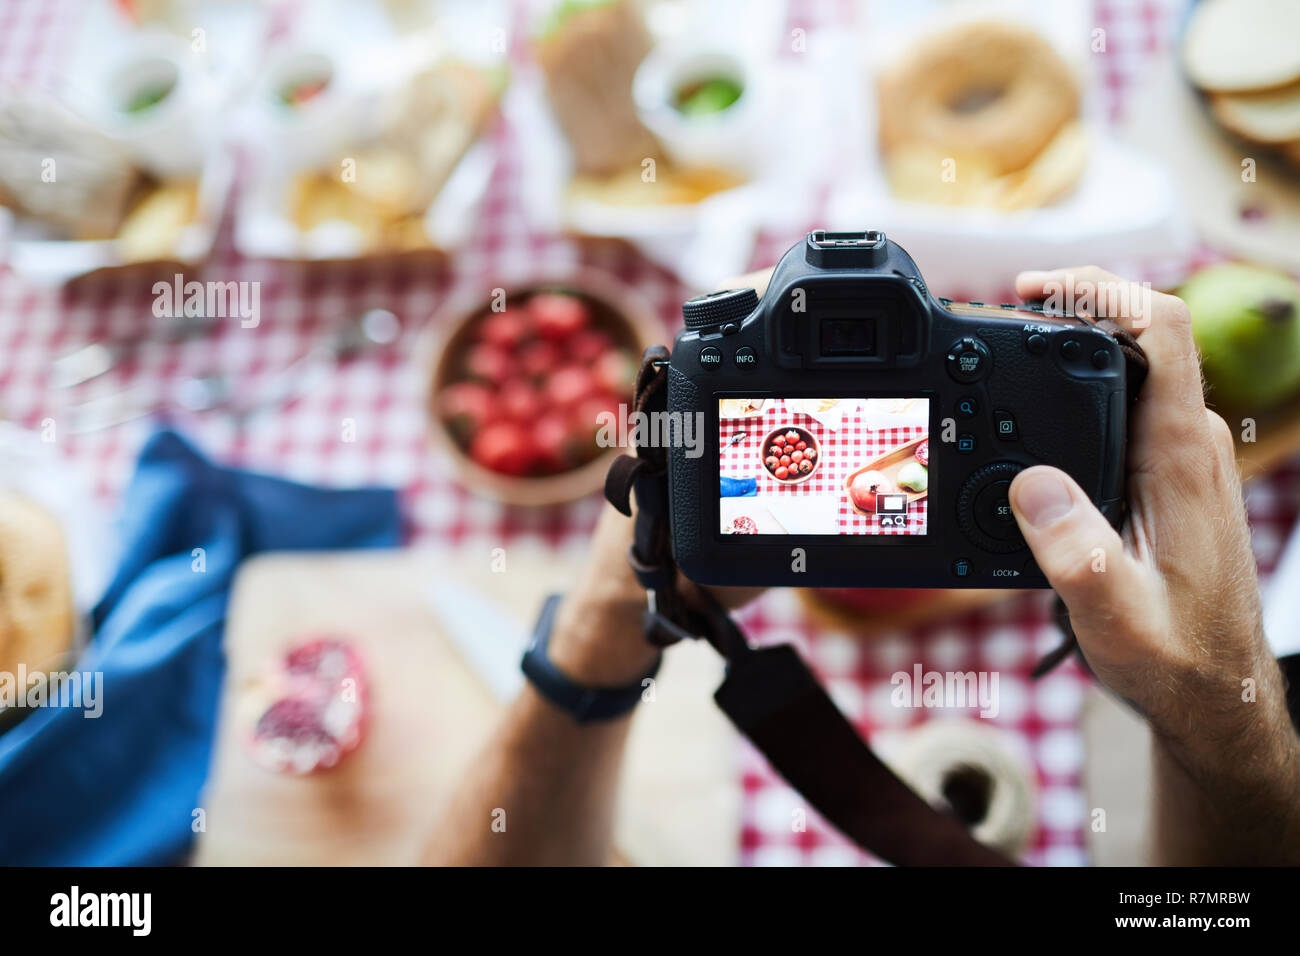 Sopra Visualizza ingrandimento del fotografo tenere la fotocamera quando si scattano fotografie di cibo sul tavolo da picnic, spazio di copia Foto Stock